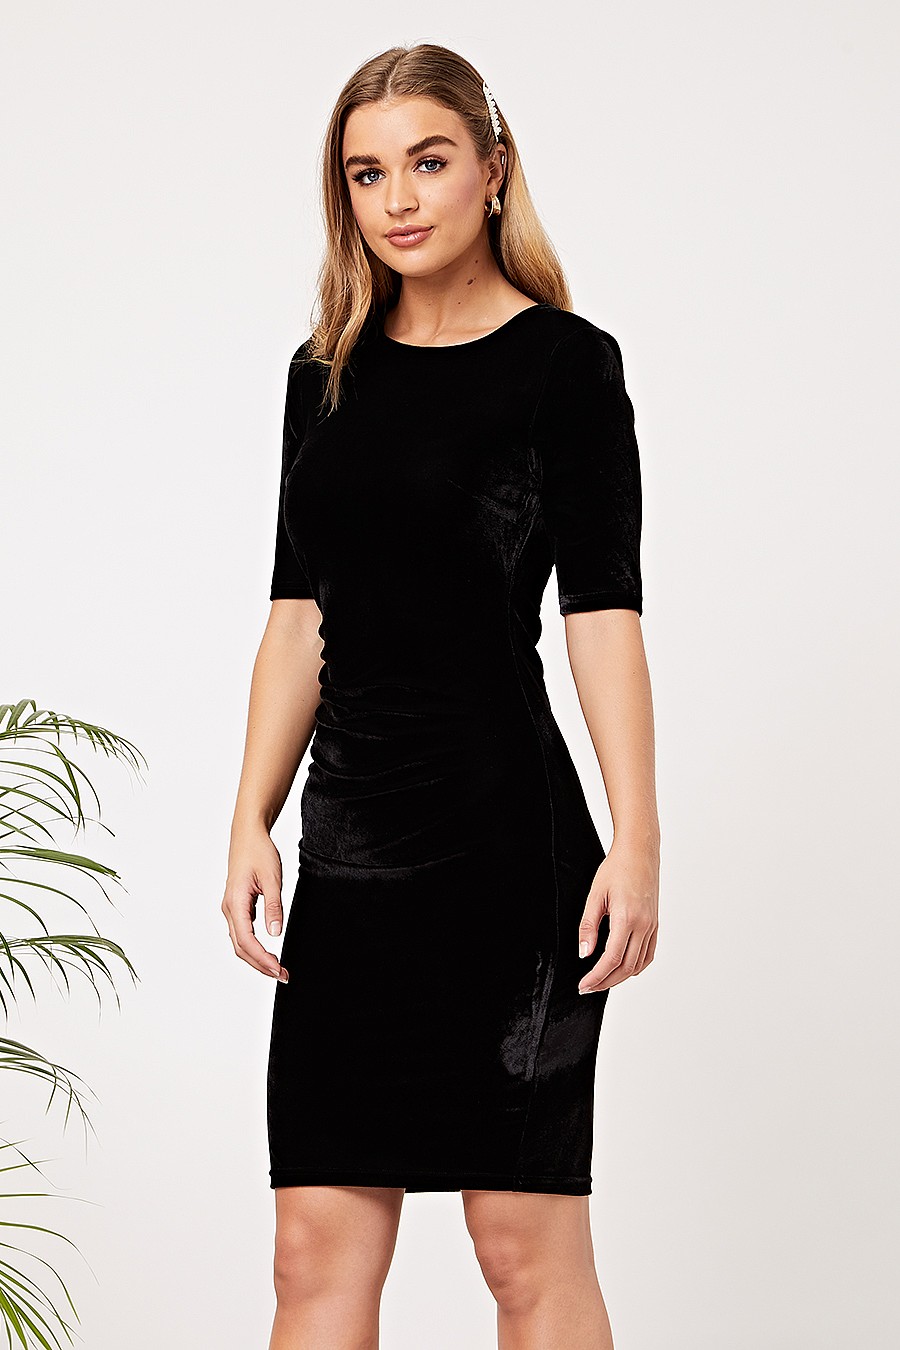 black velvet dress short